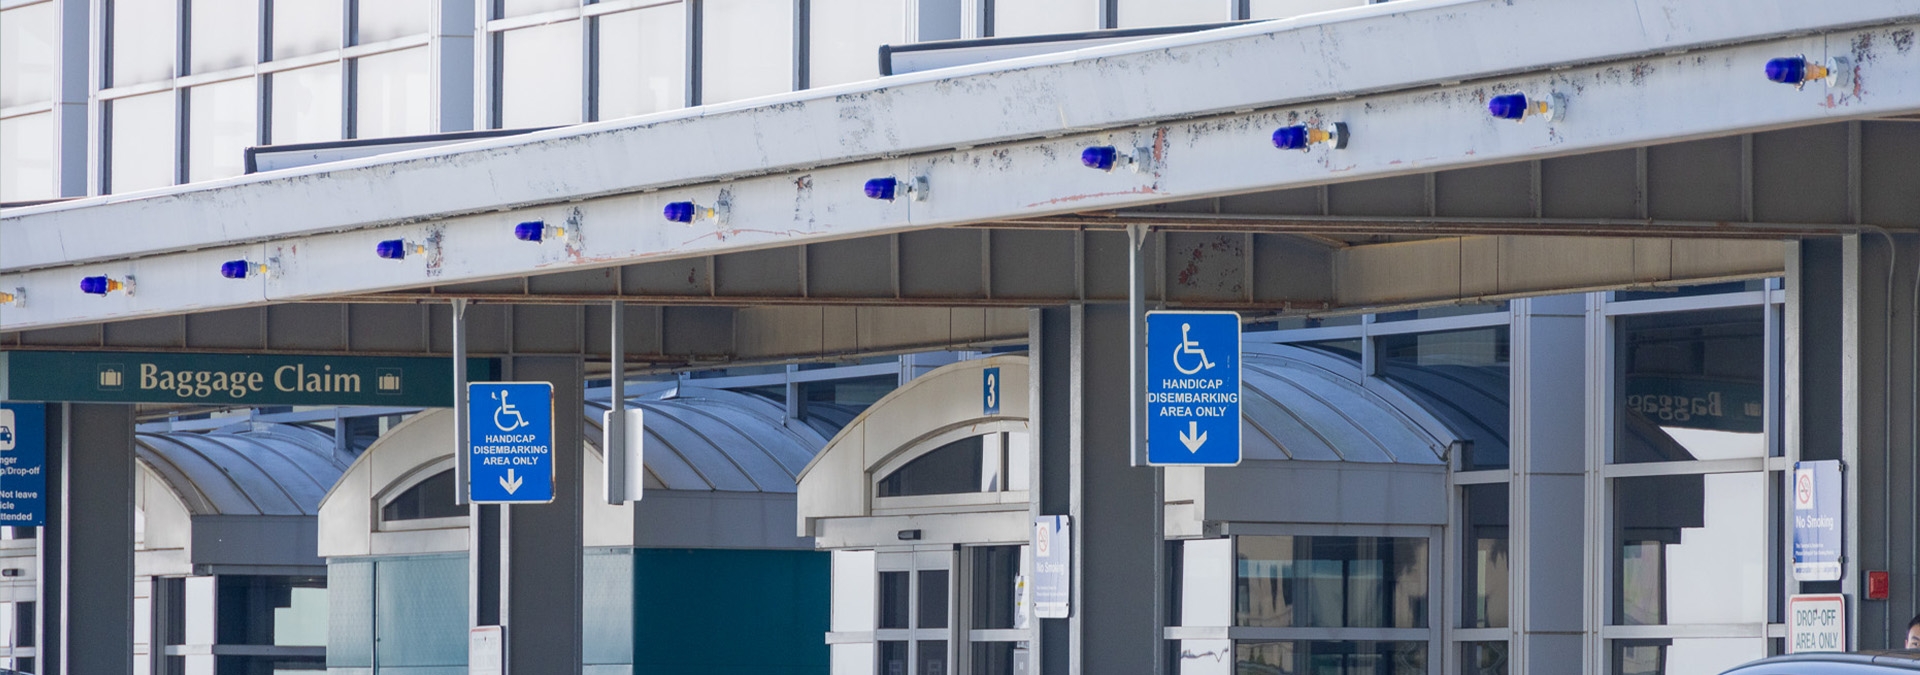 Handicap drop off signage at terminal